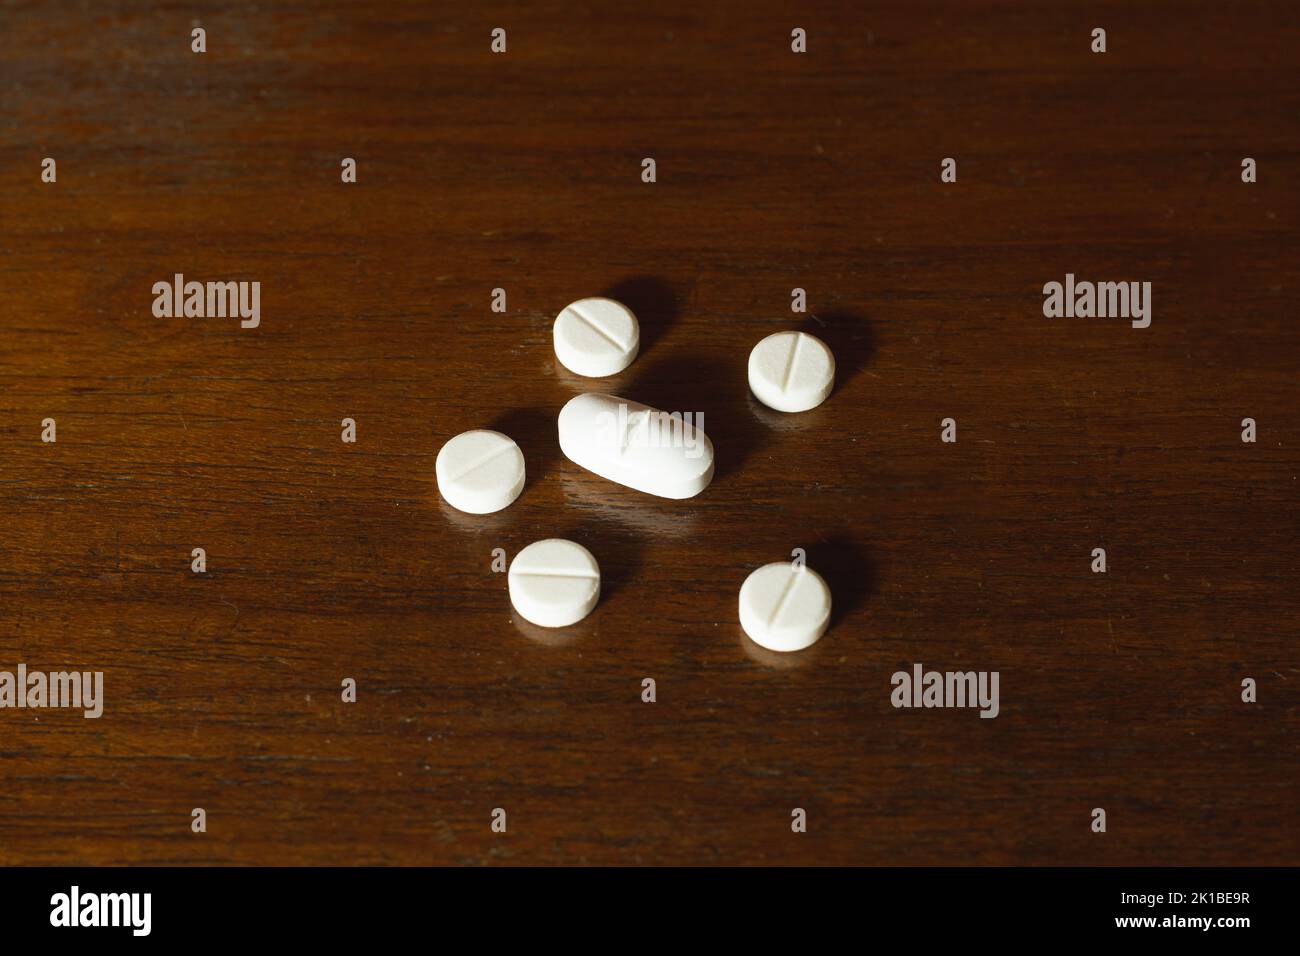 Semplice pila di pillole bianche, medicine, pillole impilate su sfondo marrone. Forniture mediche. Foto Stock